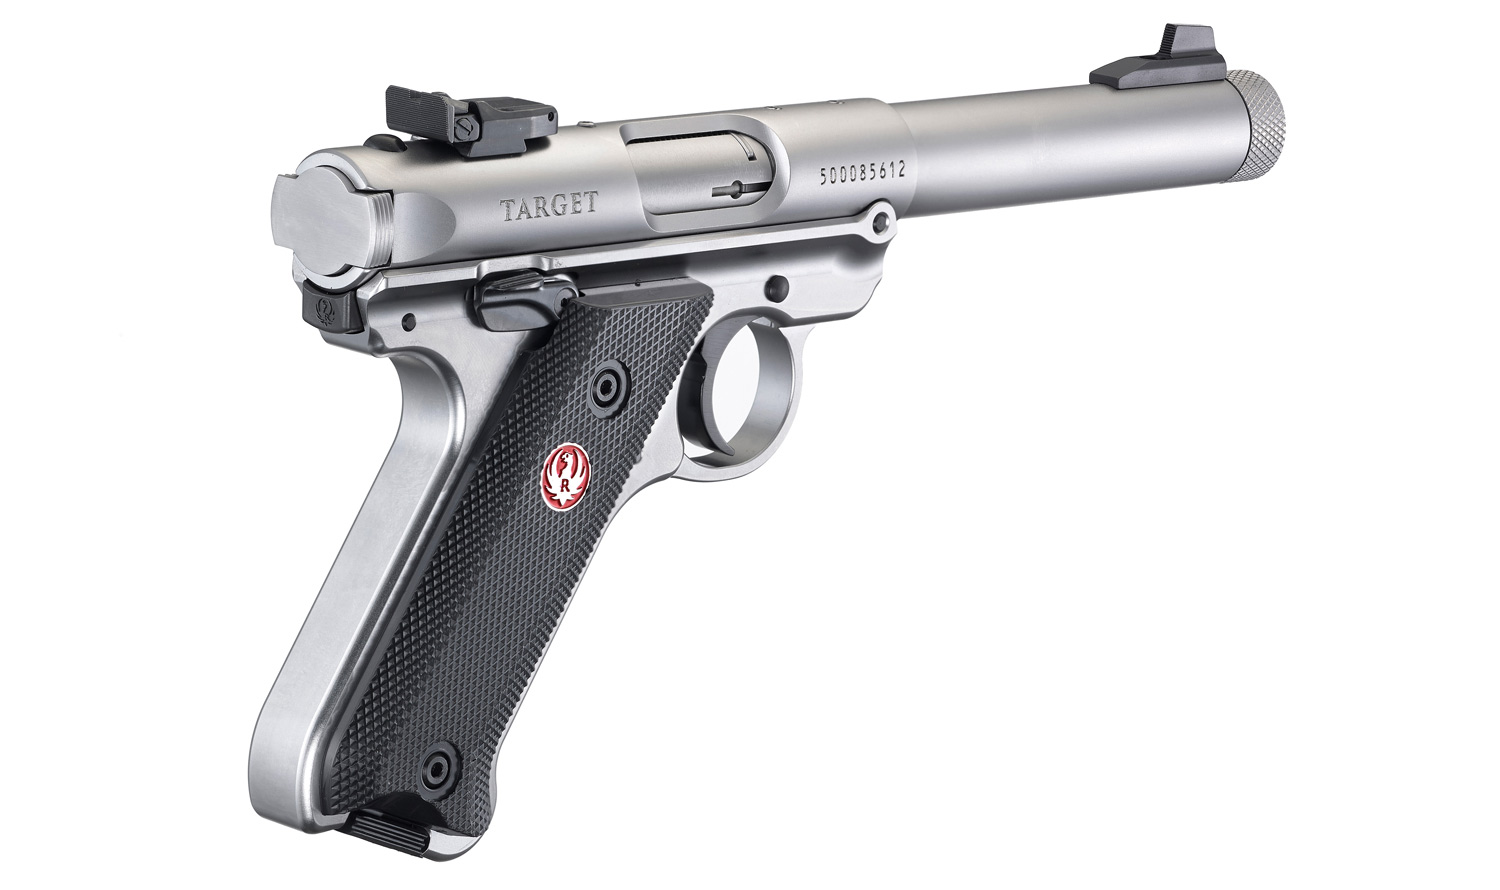 Related image of Ruger Mark Iv Target Rimfire Pistol Model 40126.